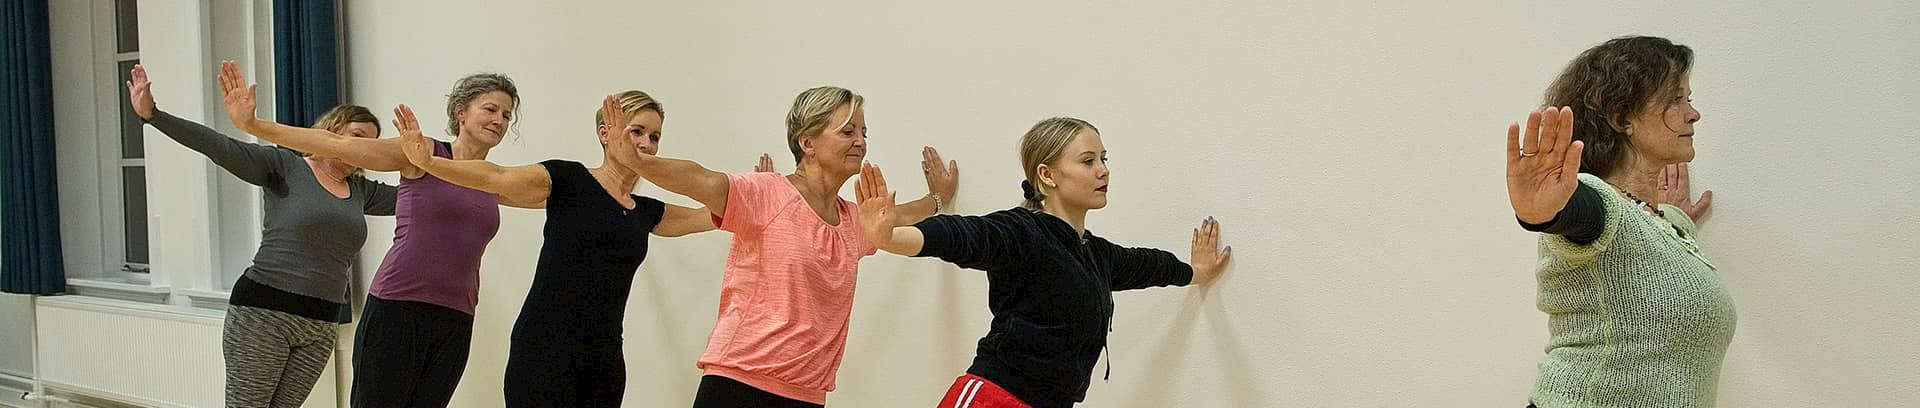 Undervisning i Hathayoga ved FOF Aarhus, underviser yogalærer Anne Margrethe Tolsgaard